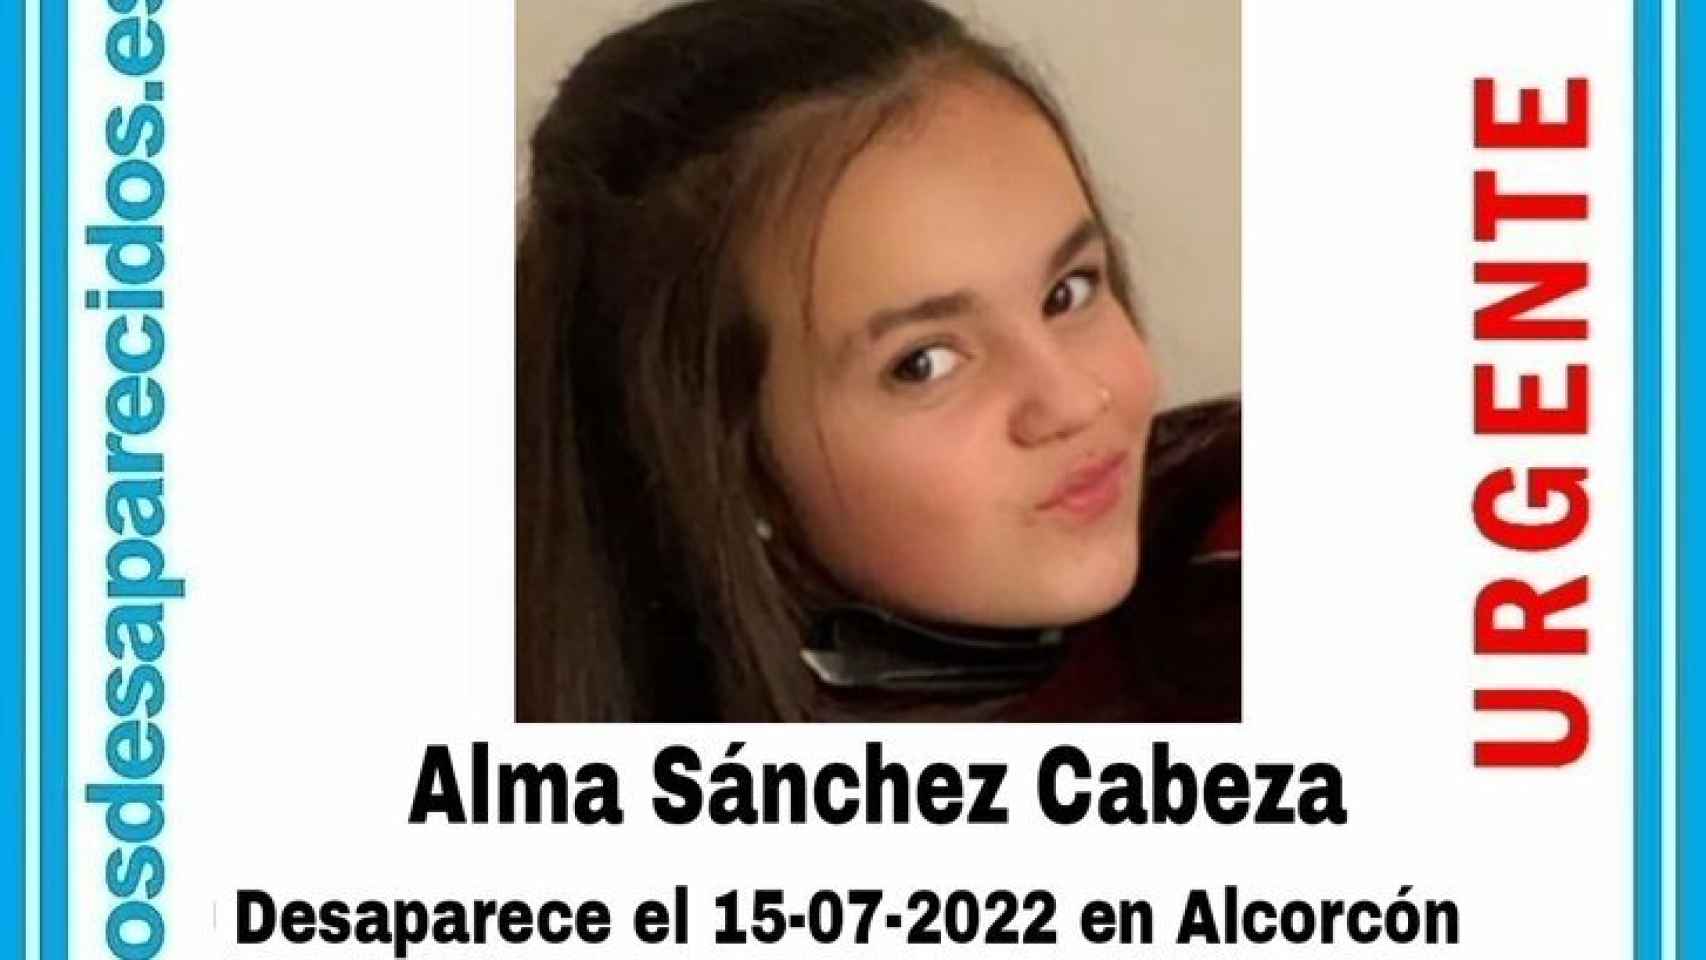 Alma Sánchez Cabeza, la menor de 13 años desaparecida en Alcorcón.